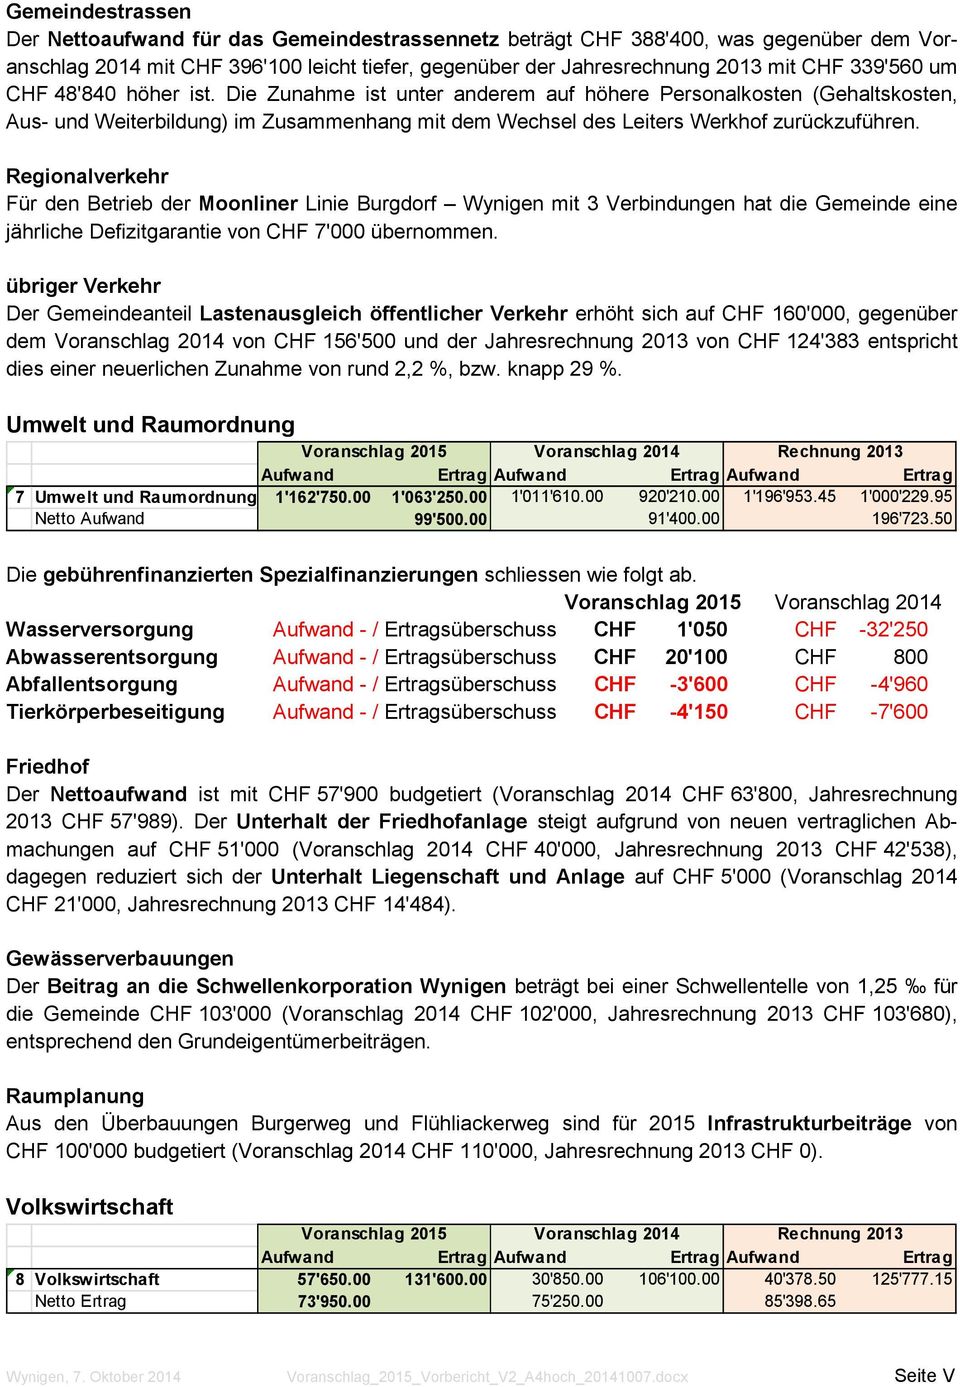 Regionalverkehr Für den Betrieb der Moonliner Linie Burgdorf Wynigen mit 3 Verbindungen hat die Gemeinde eine jährliche Defizitgarantie von CHF 7'000 übernommen.